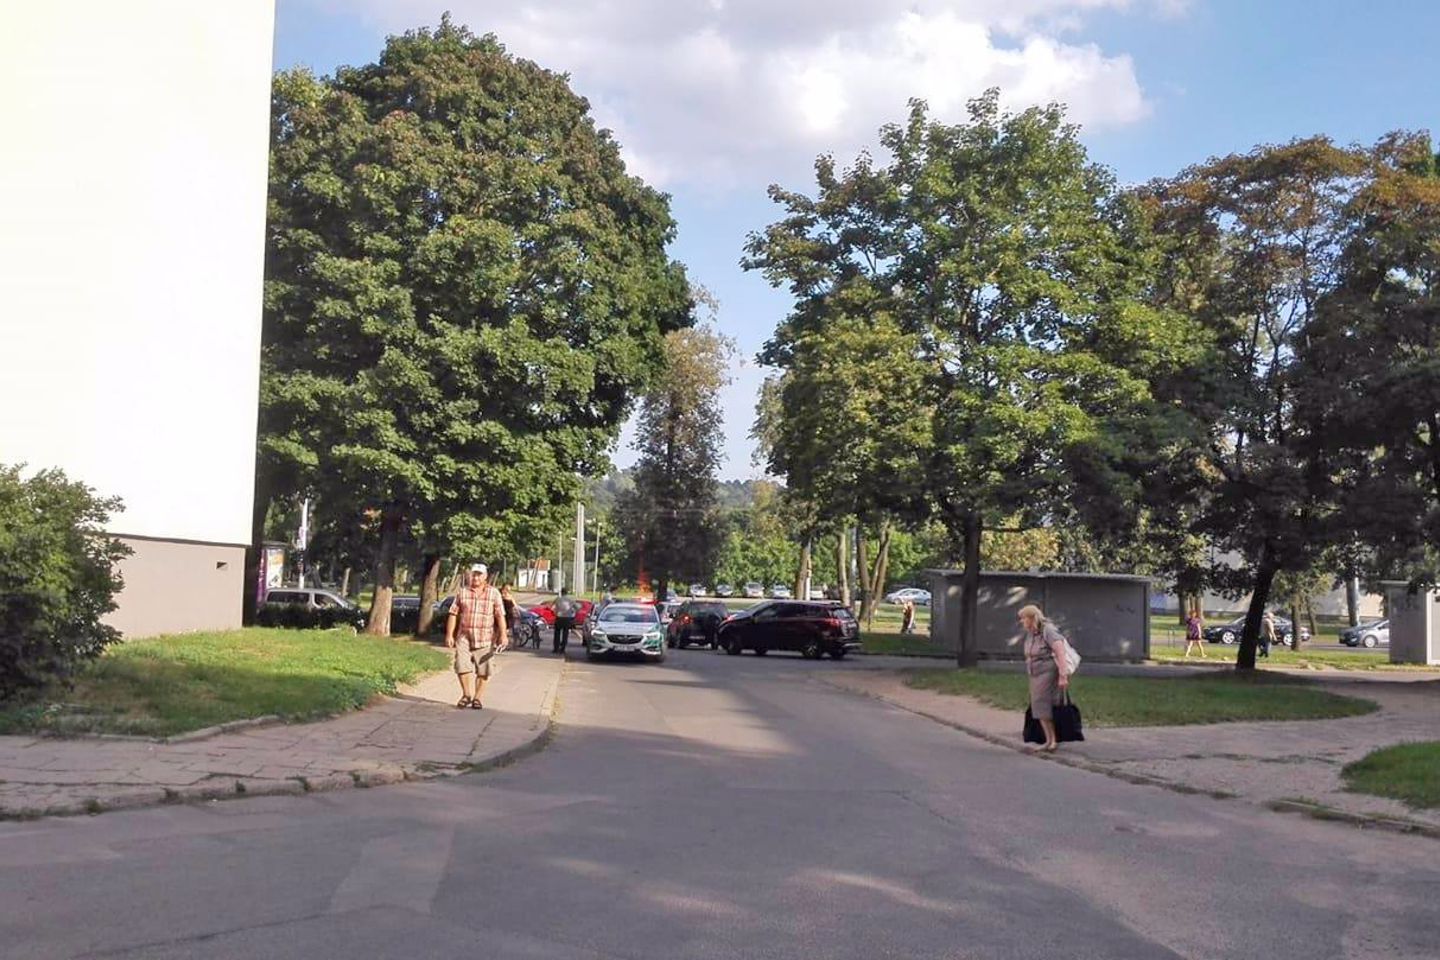  Vilniaus daugiabučių kiemuose automobilis kliudė 11-metį dviratininką.<br> Įvykio liudytojos Giedrės nuotr.